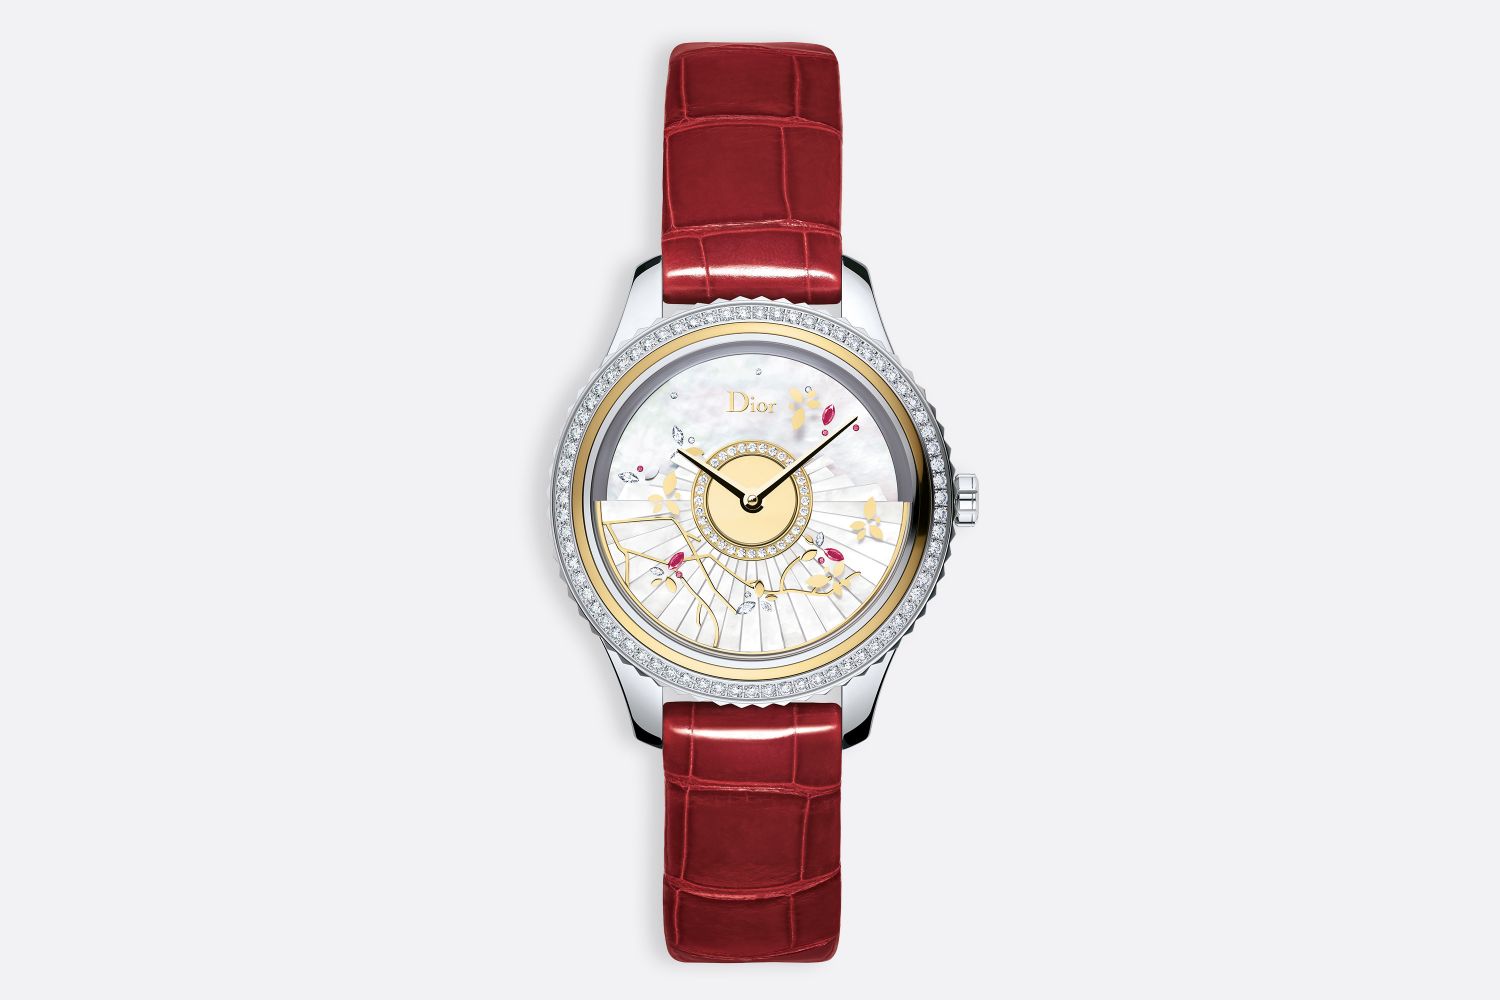 Dior概念手表的概念设计尝试 - 普象网